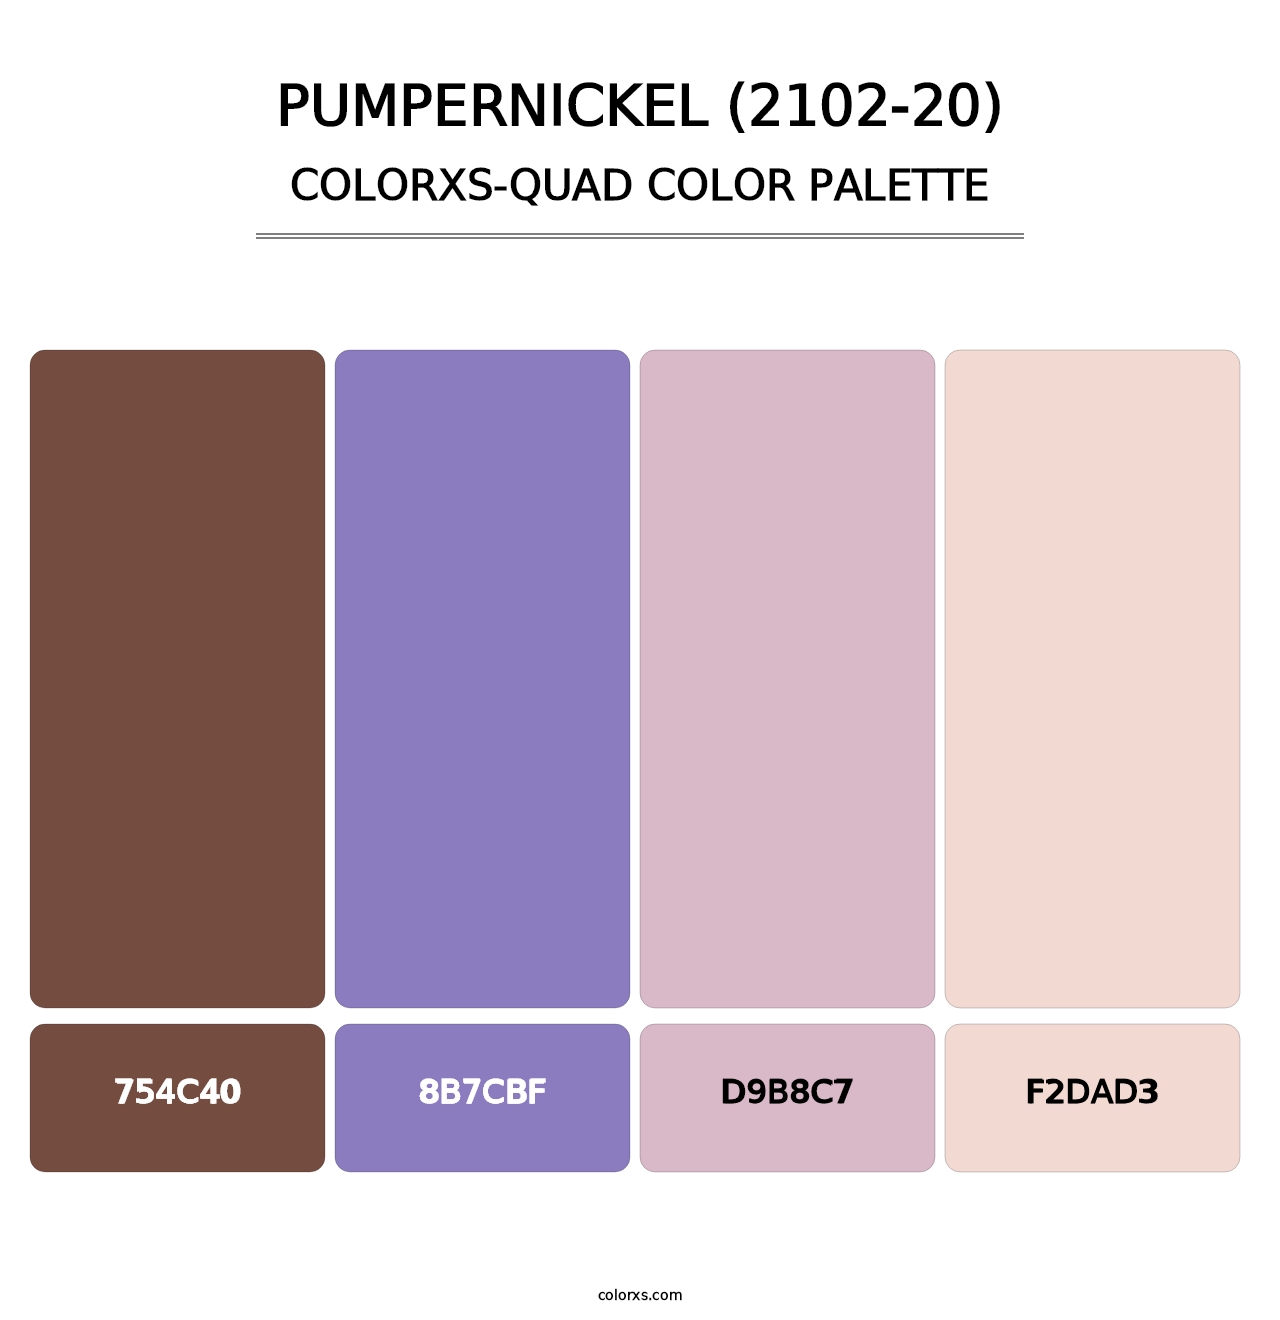 Pumpernickel (2102-20) - Colorxs Quad Palette